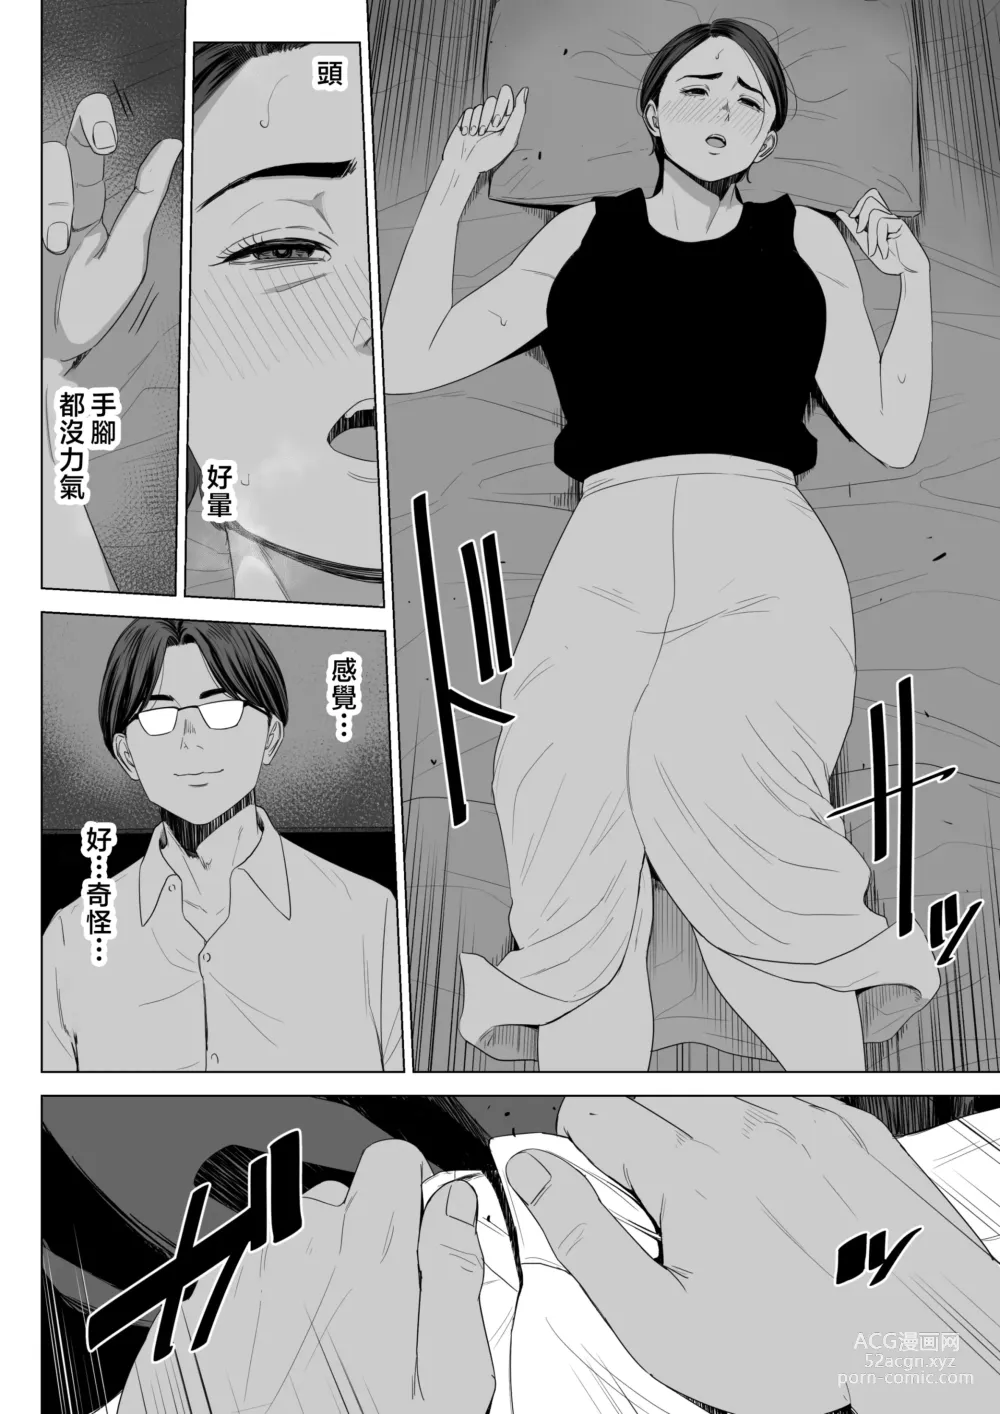 Page 11 of doujinshi Gibo no Tsukaeru Karada.